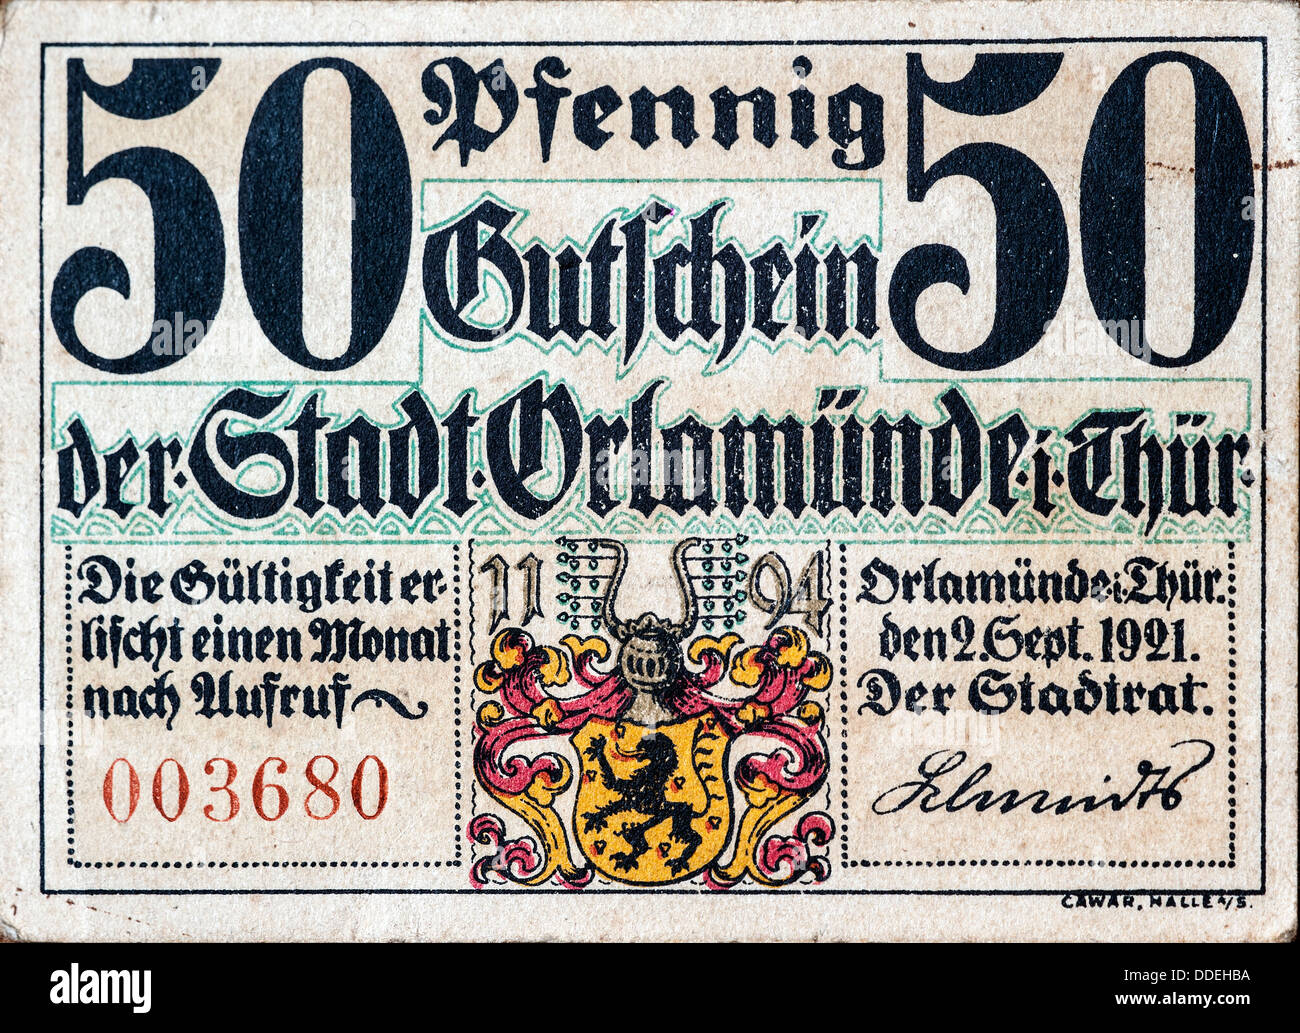 50 Pfennig Notgeld Deutsch / Notgeld Banknote von 1921, nach dem ersten Weltkrieg in Deutschland verwendet Stockfoto